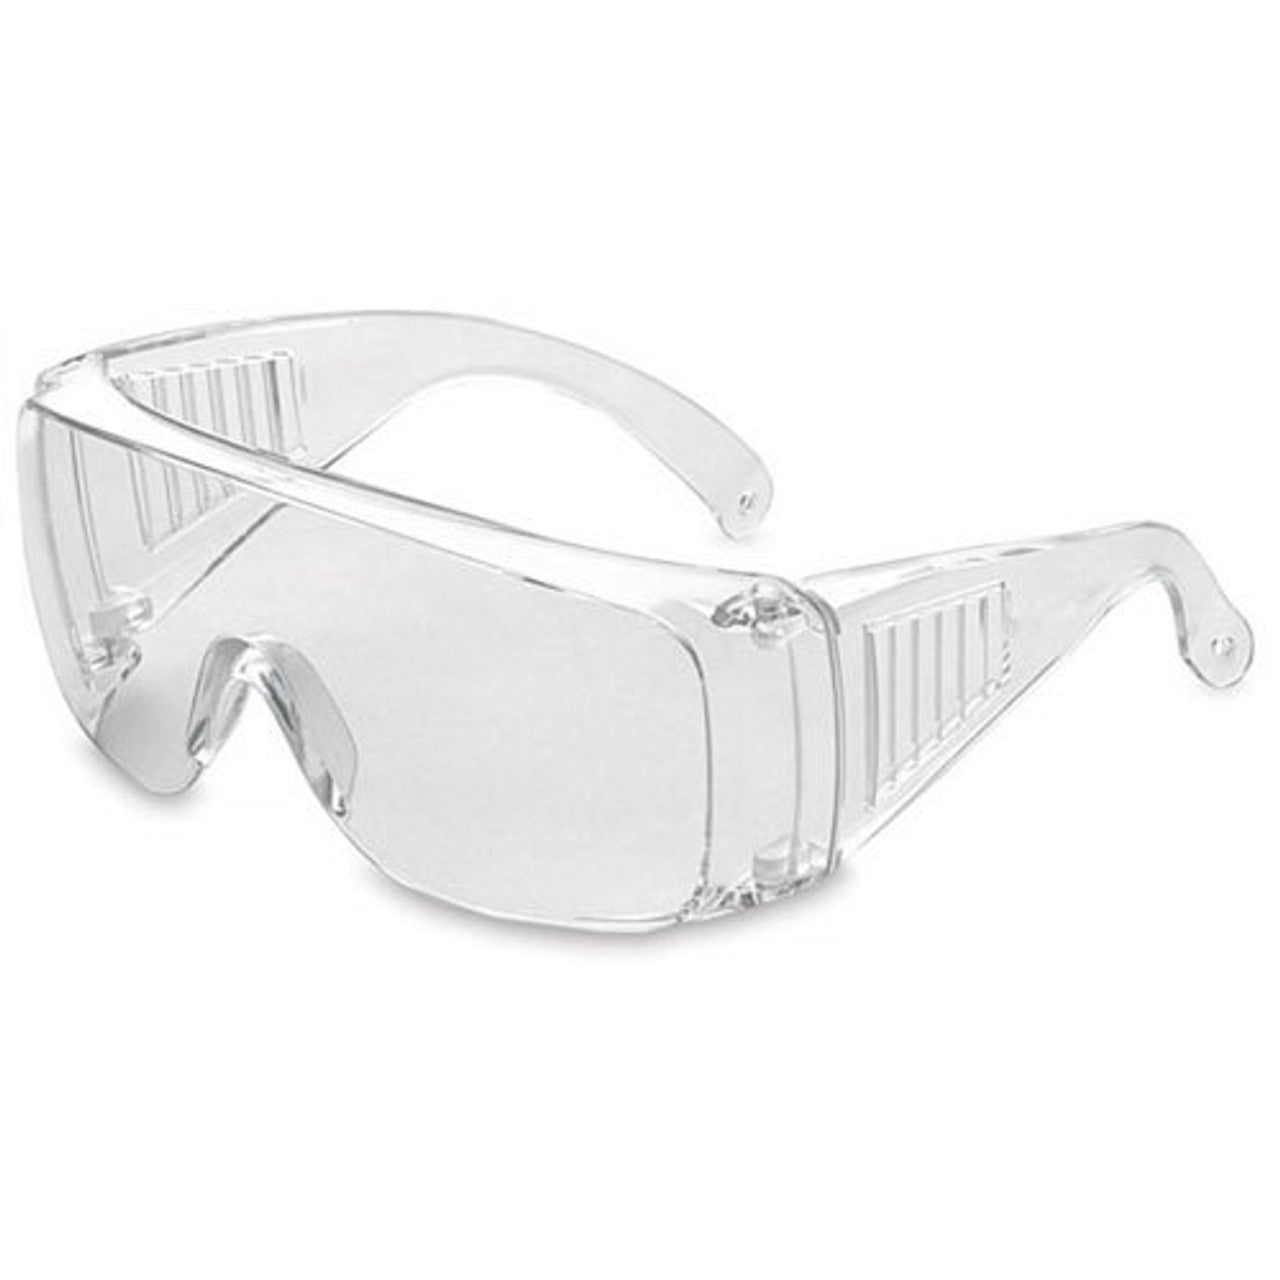 Medical Safety Overspec Glasses